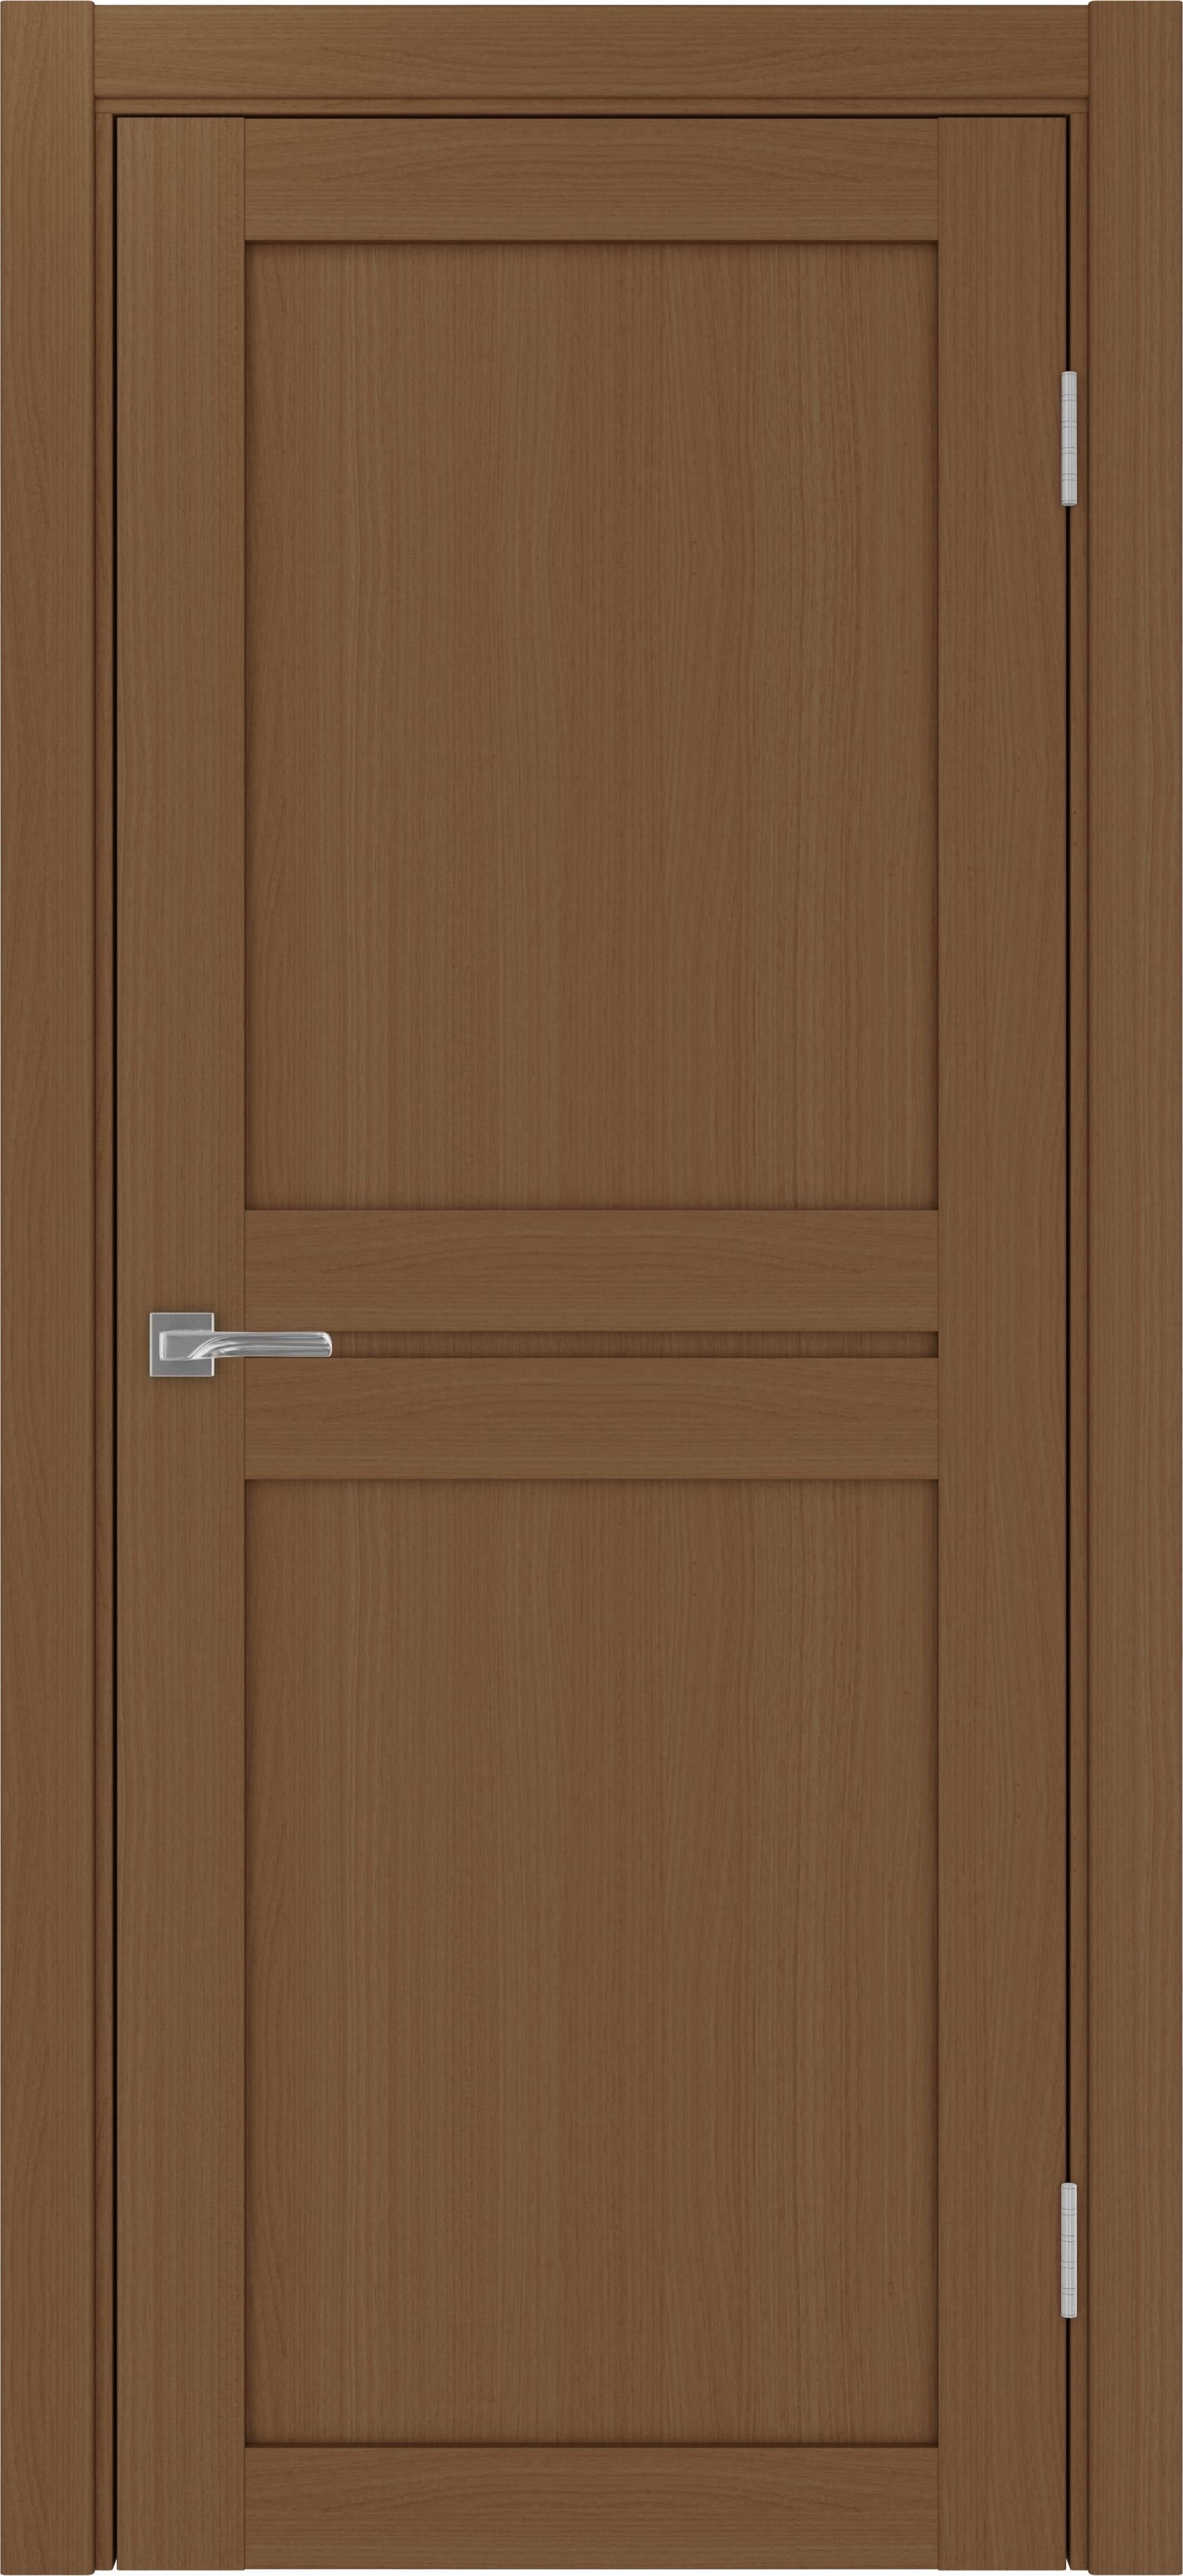 Межкомнатная дверь «Турин 520.111 Орех»